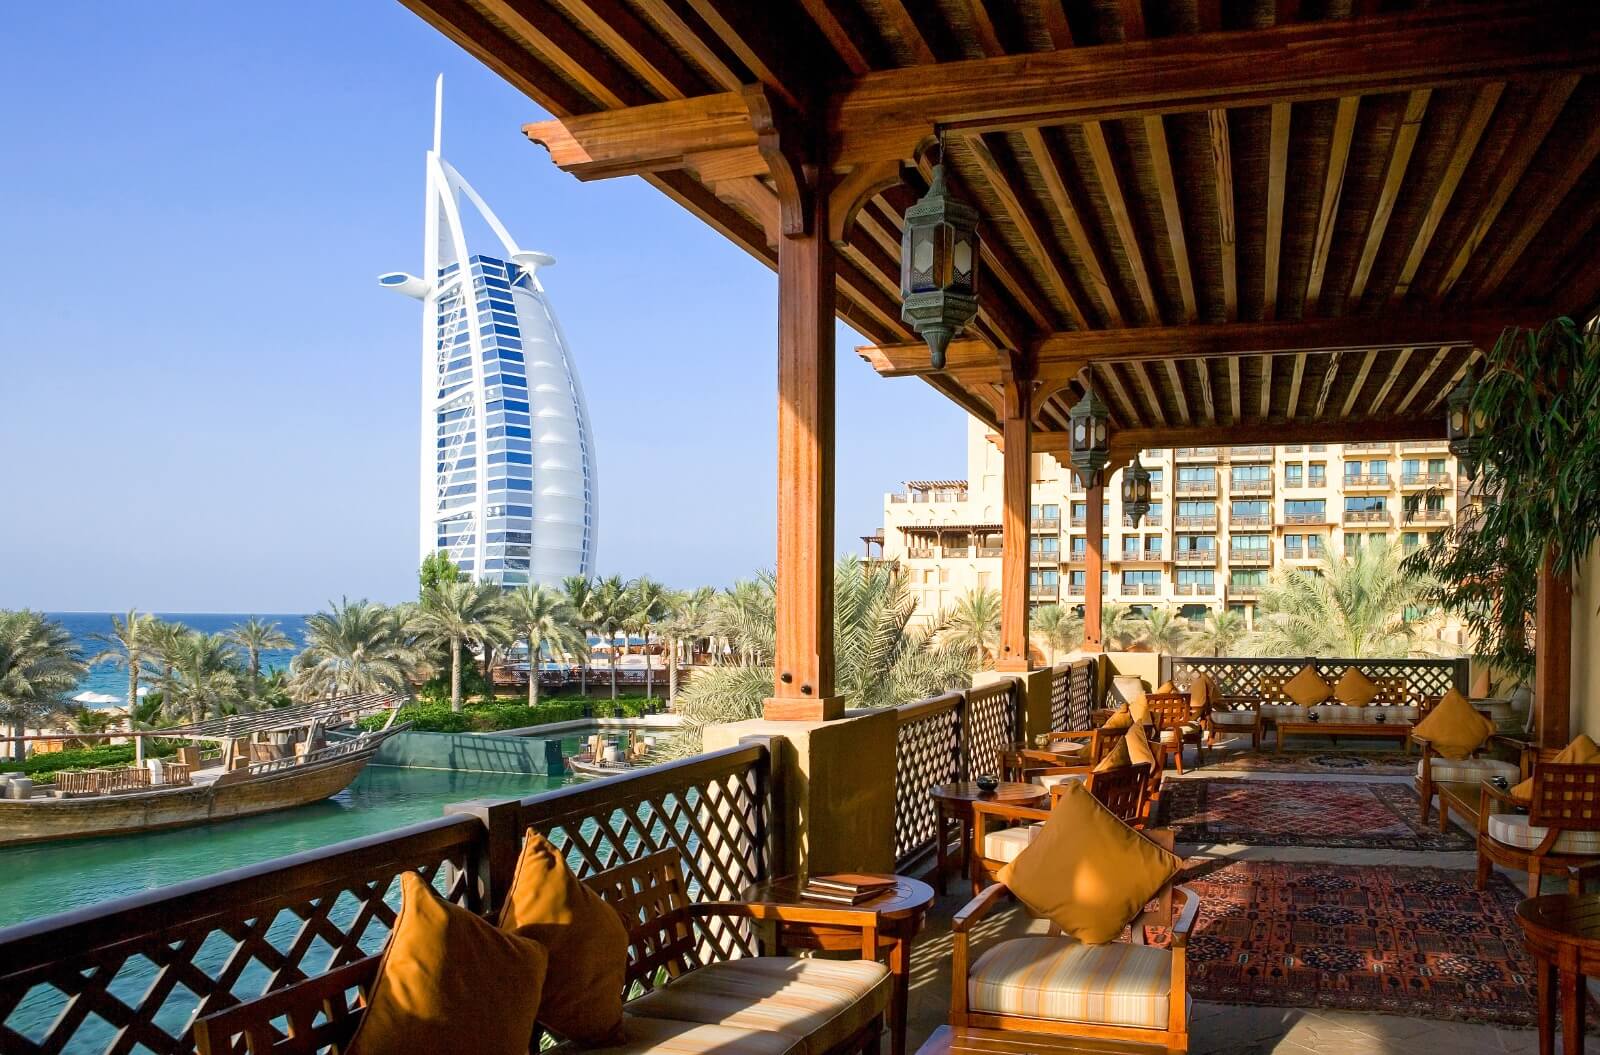 Top 10 Things To Do At The Madinat Jumeirah In Dubai